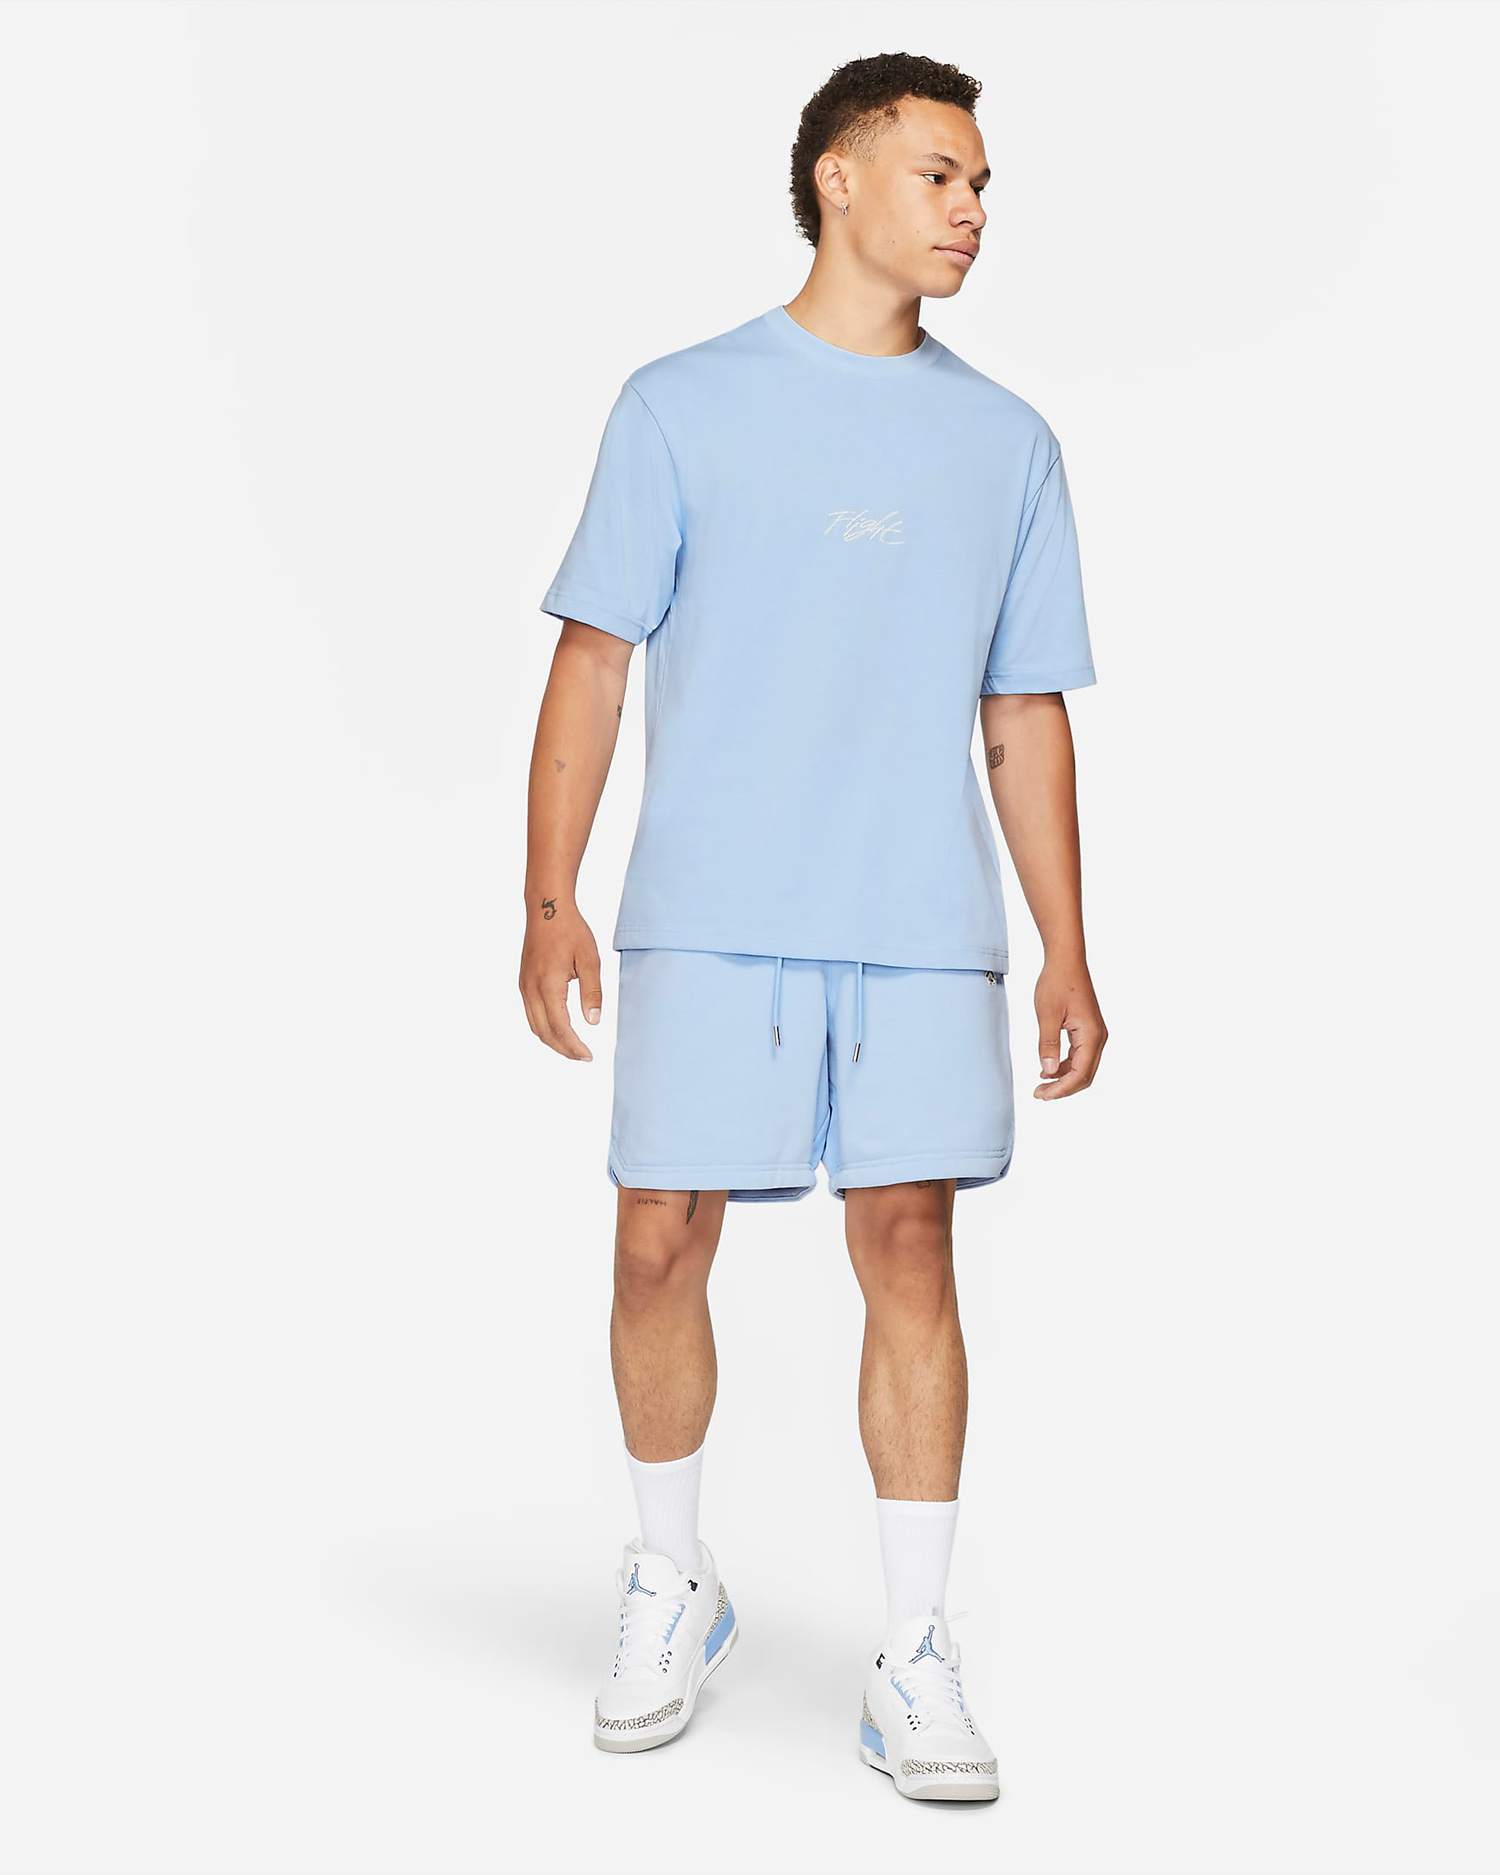 jordan-aluminum-blue-shirt-shorts-outfit